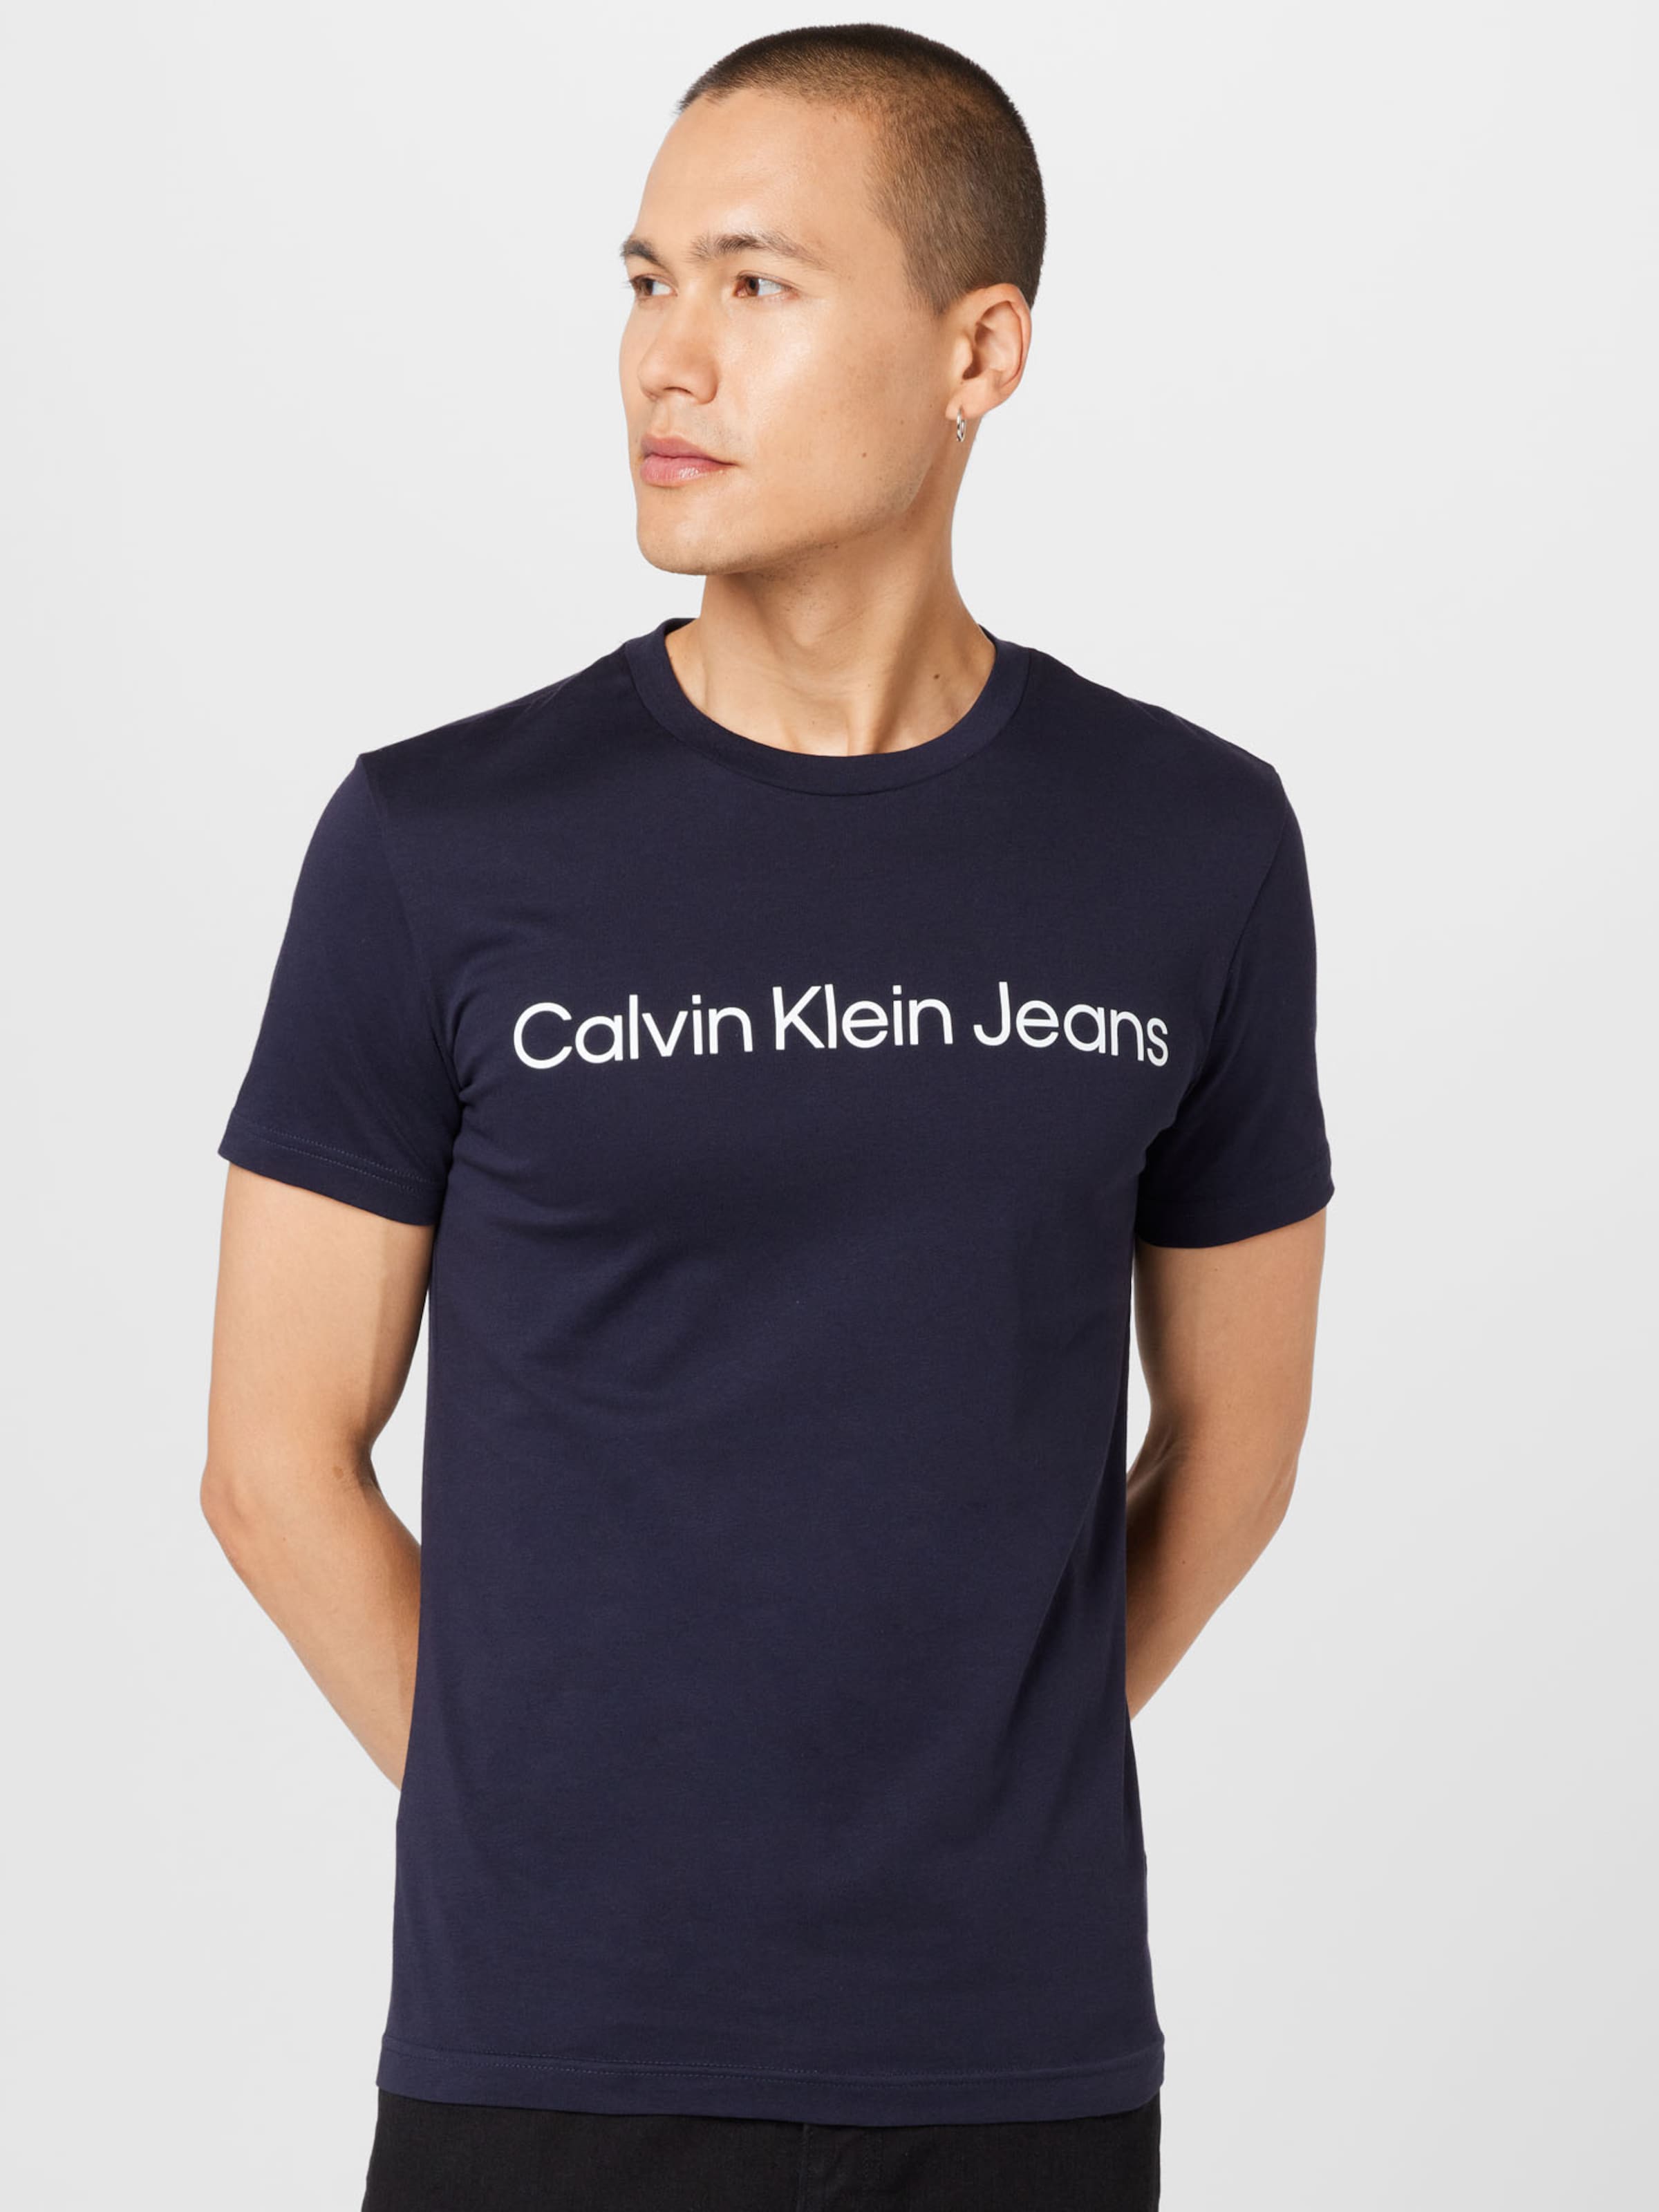 Introducir 74+ imagen calvin klein jeans blue shirt